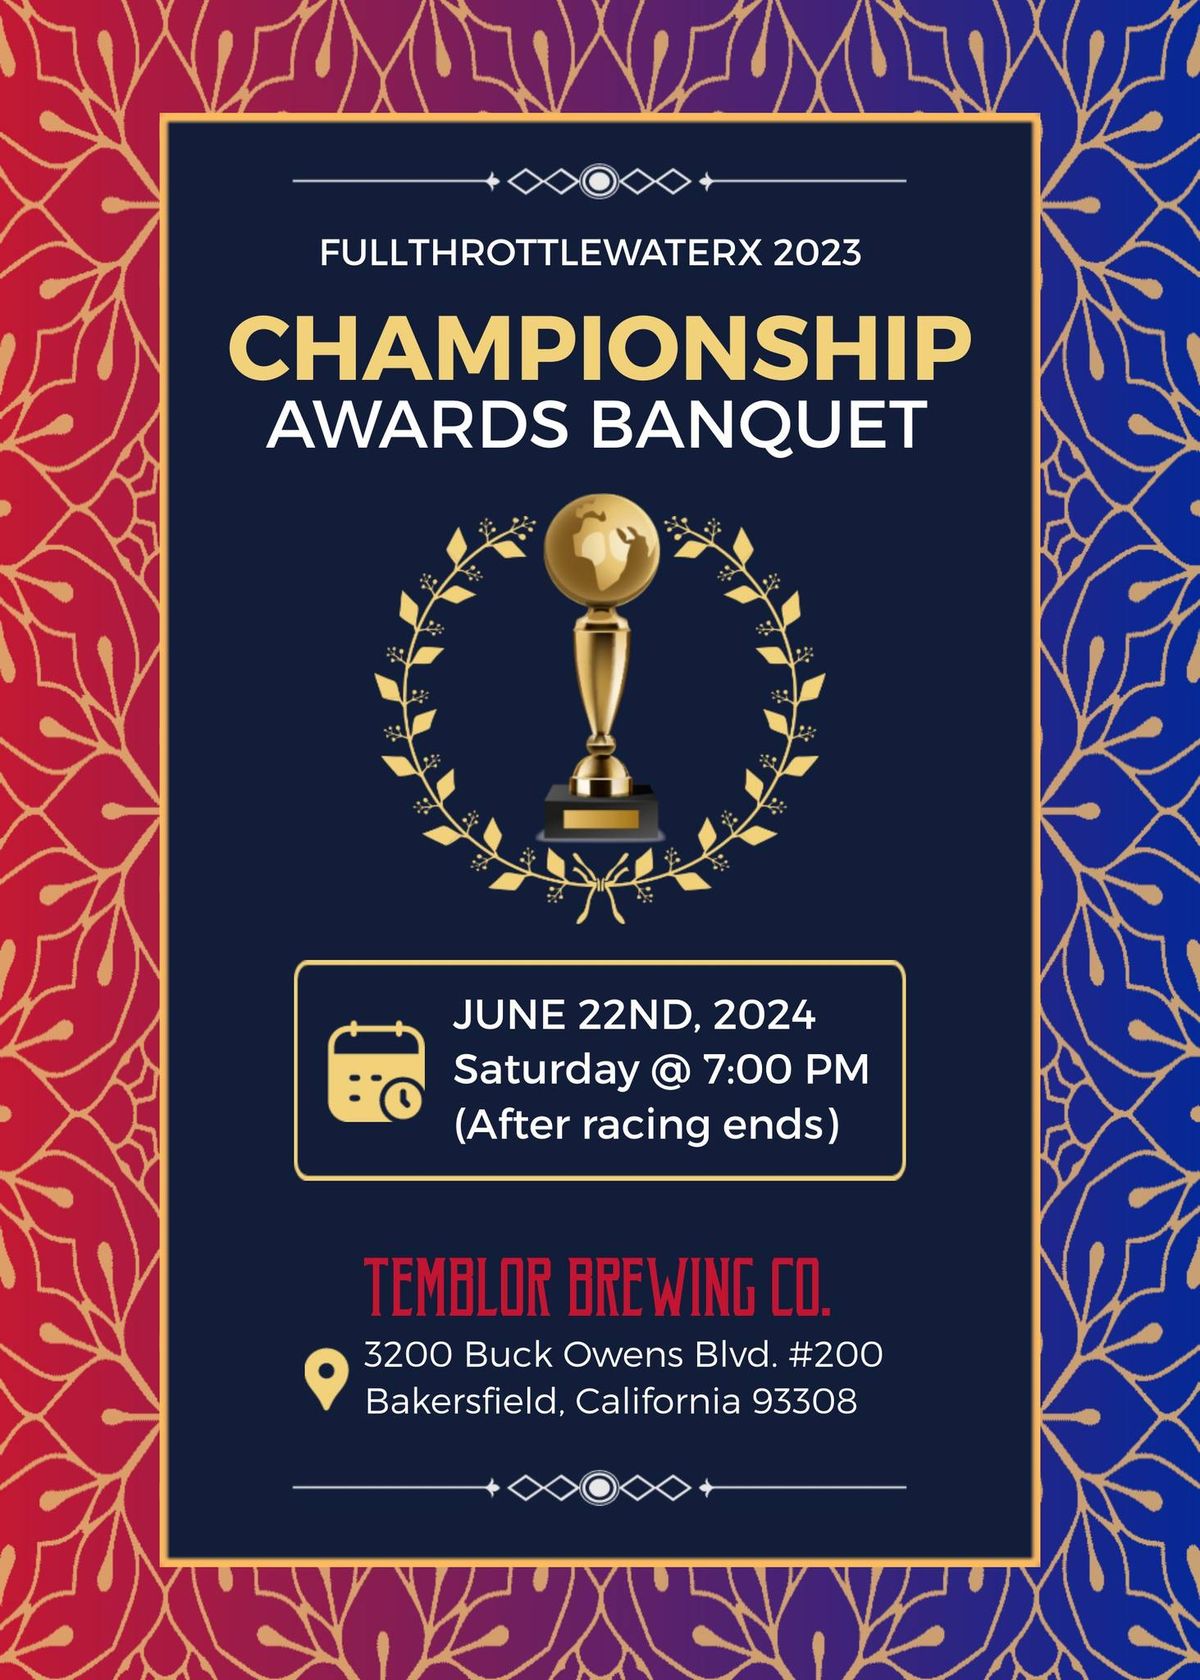 2023 Championship Awards Banquet